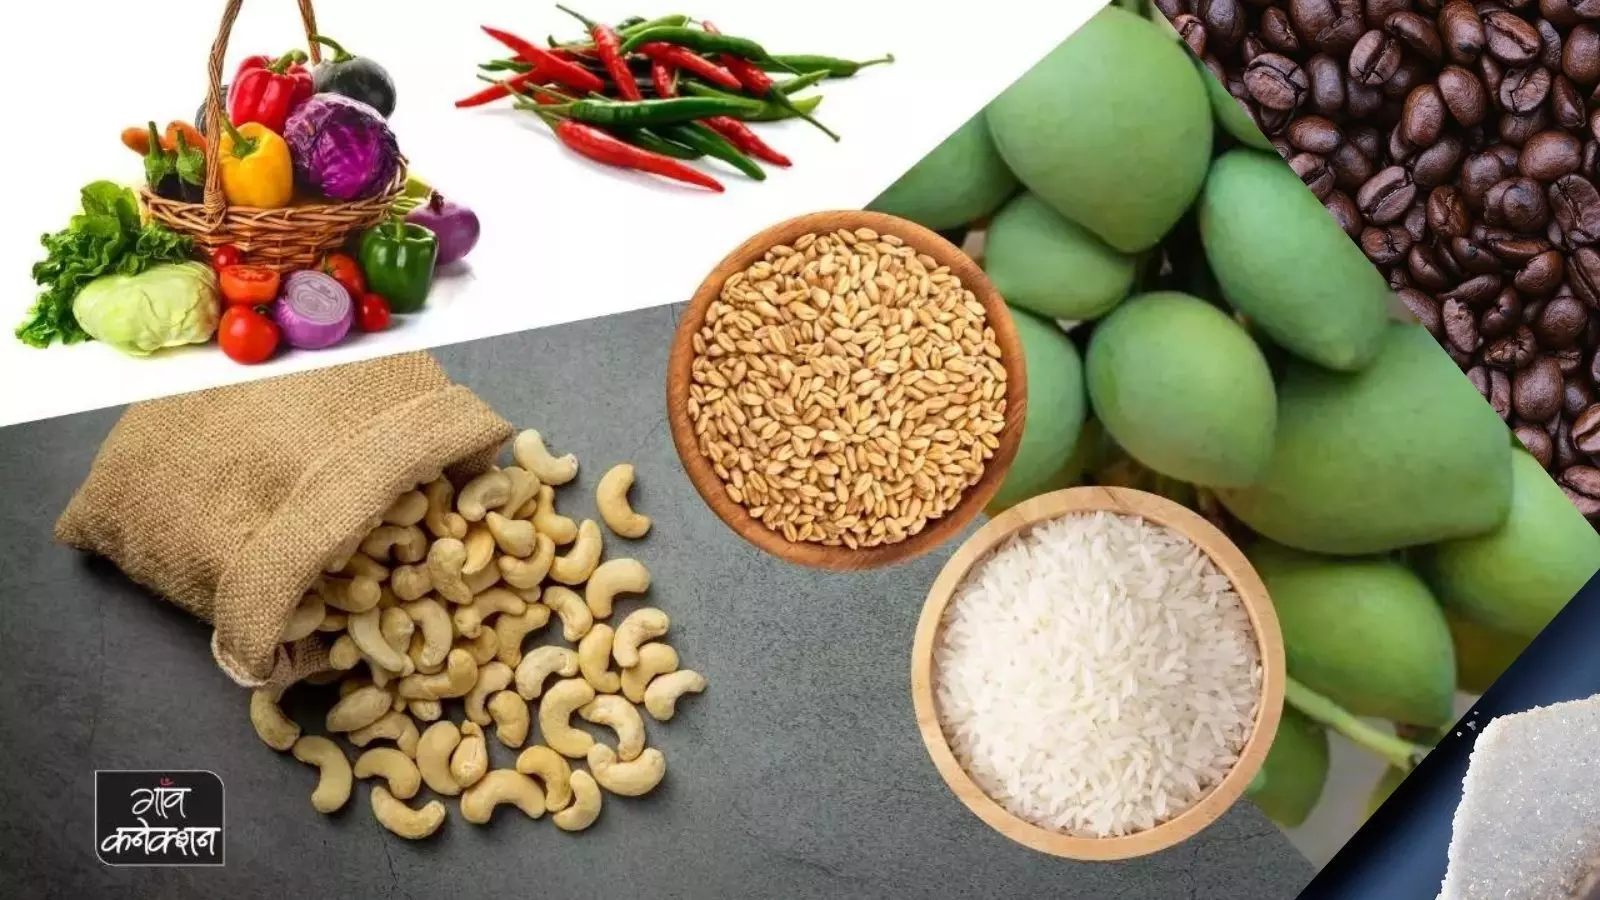 रिकॉर्ड स्तर पर पहुंचा भारत का कृषि निर्यात, चावल, गेहूं, चीनी का किया गया सबसे अधिक निर्यात